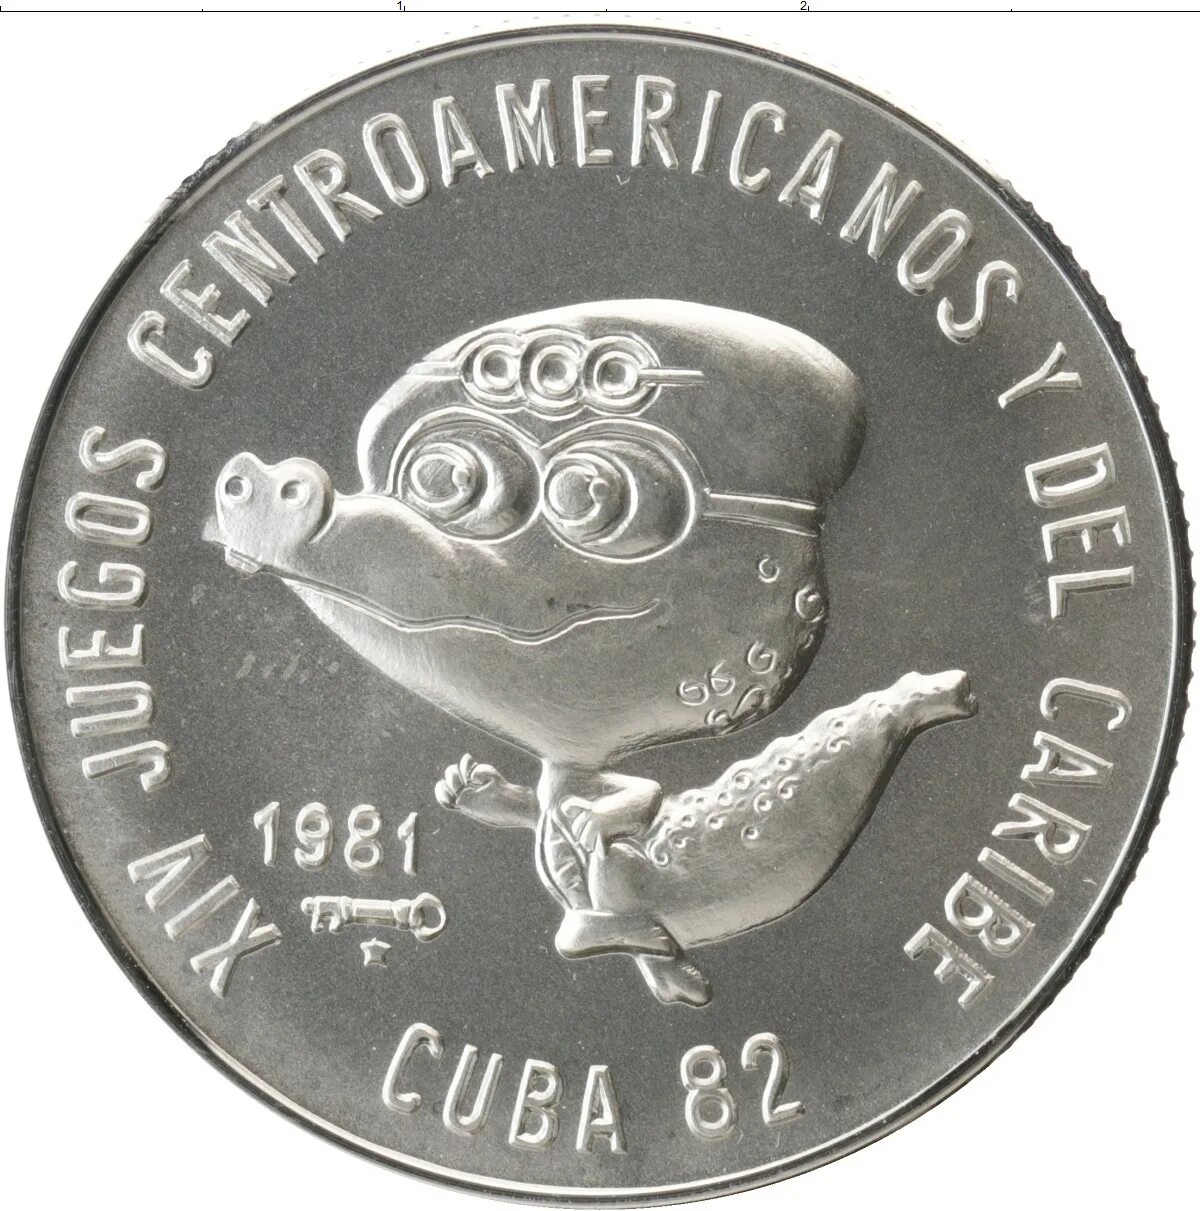 5 Песо Куба 1981. Монеты Кубы. Кубинские монеты. Песо Куба монета.